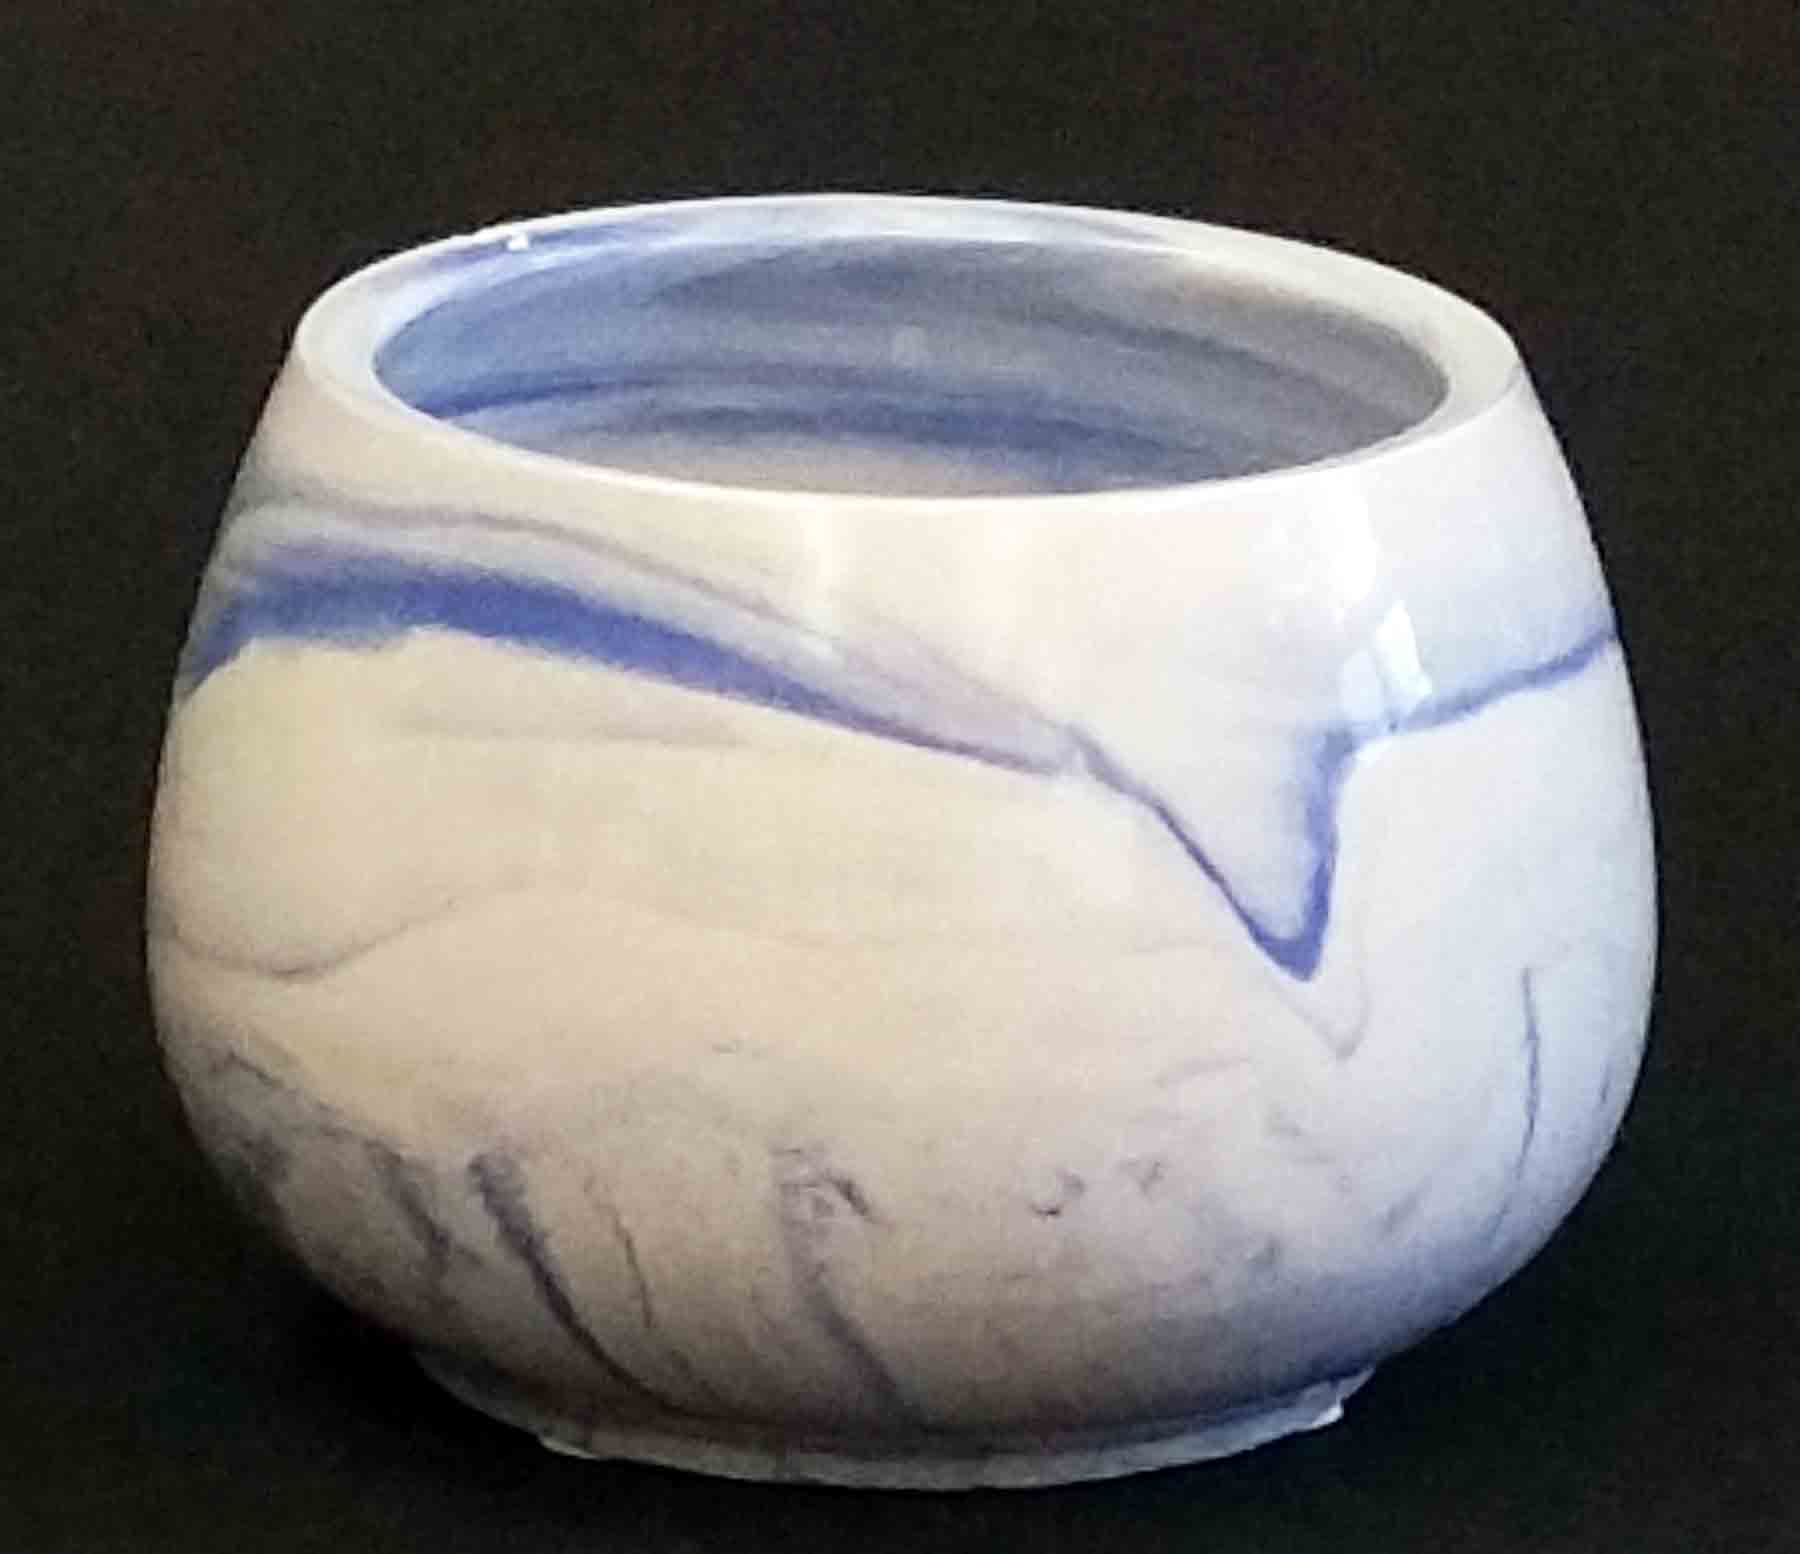 CC374 - 4.5" Marble Ceramic Pot - 6.65 ea, or 6.30/18